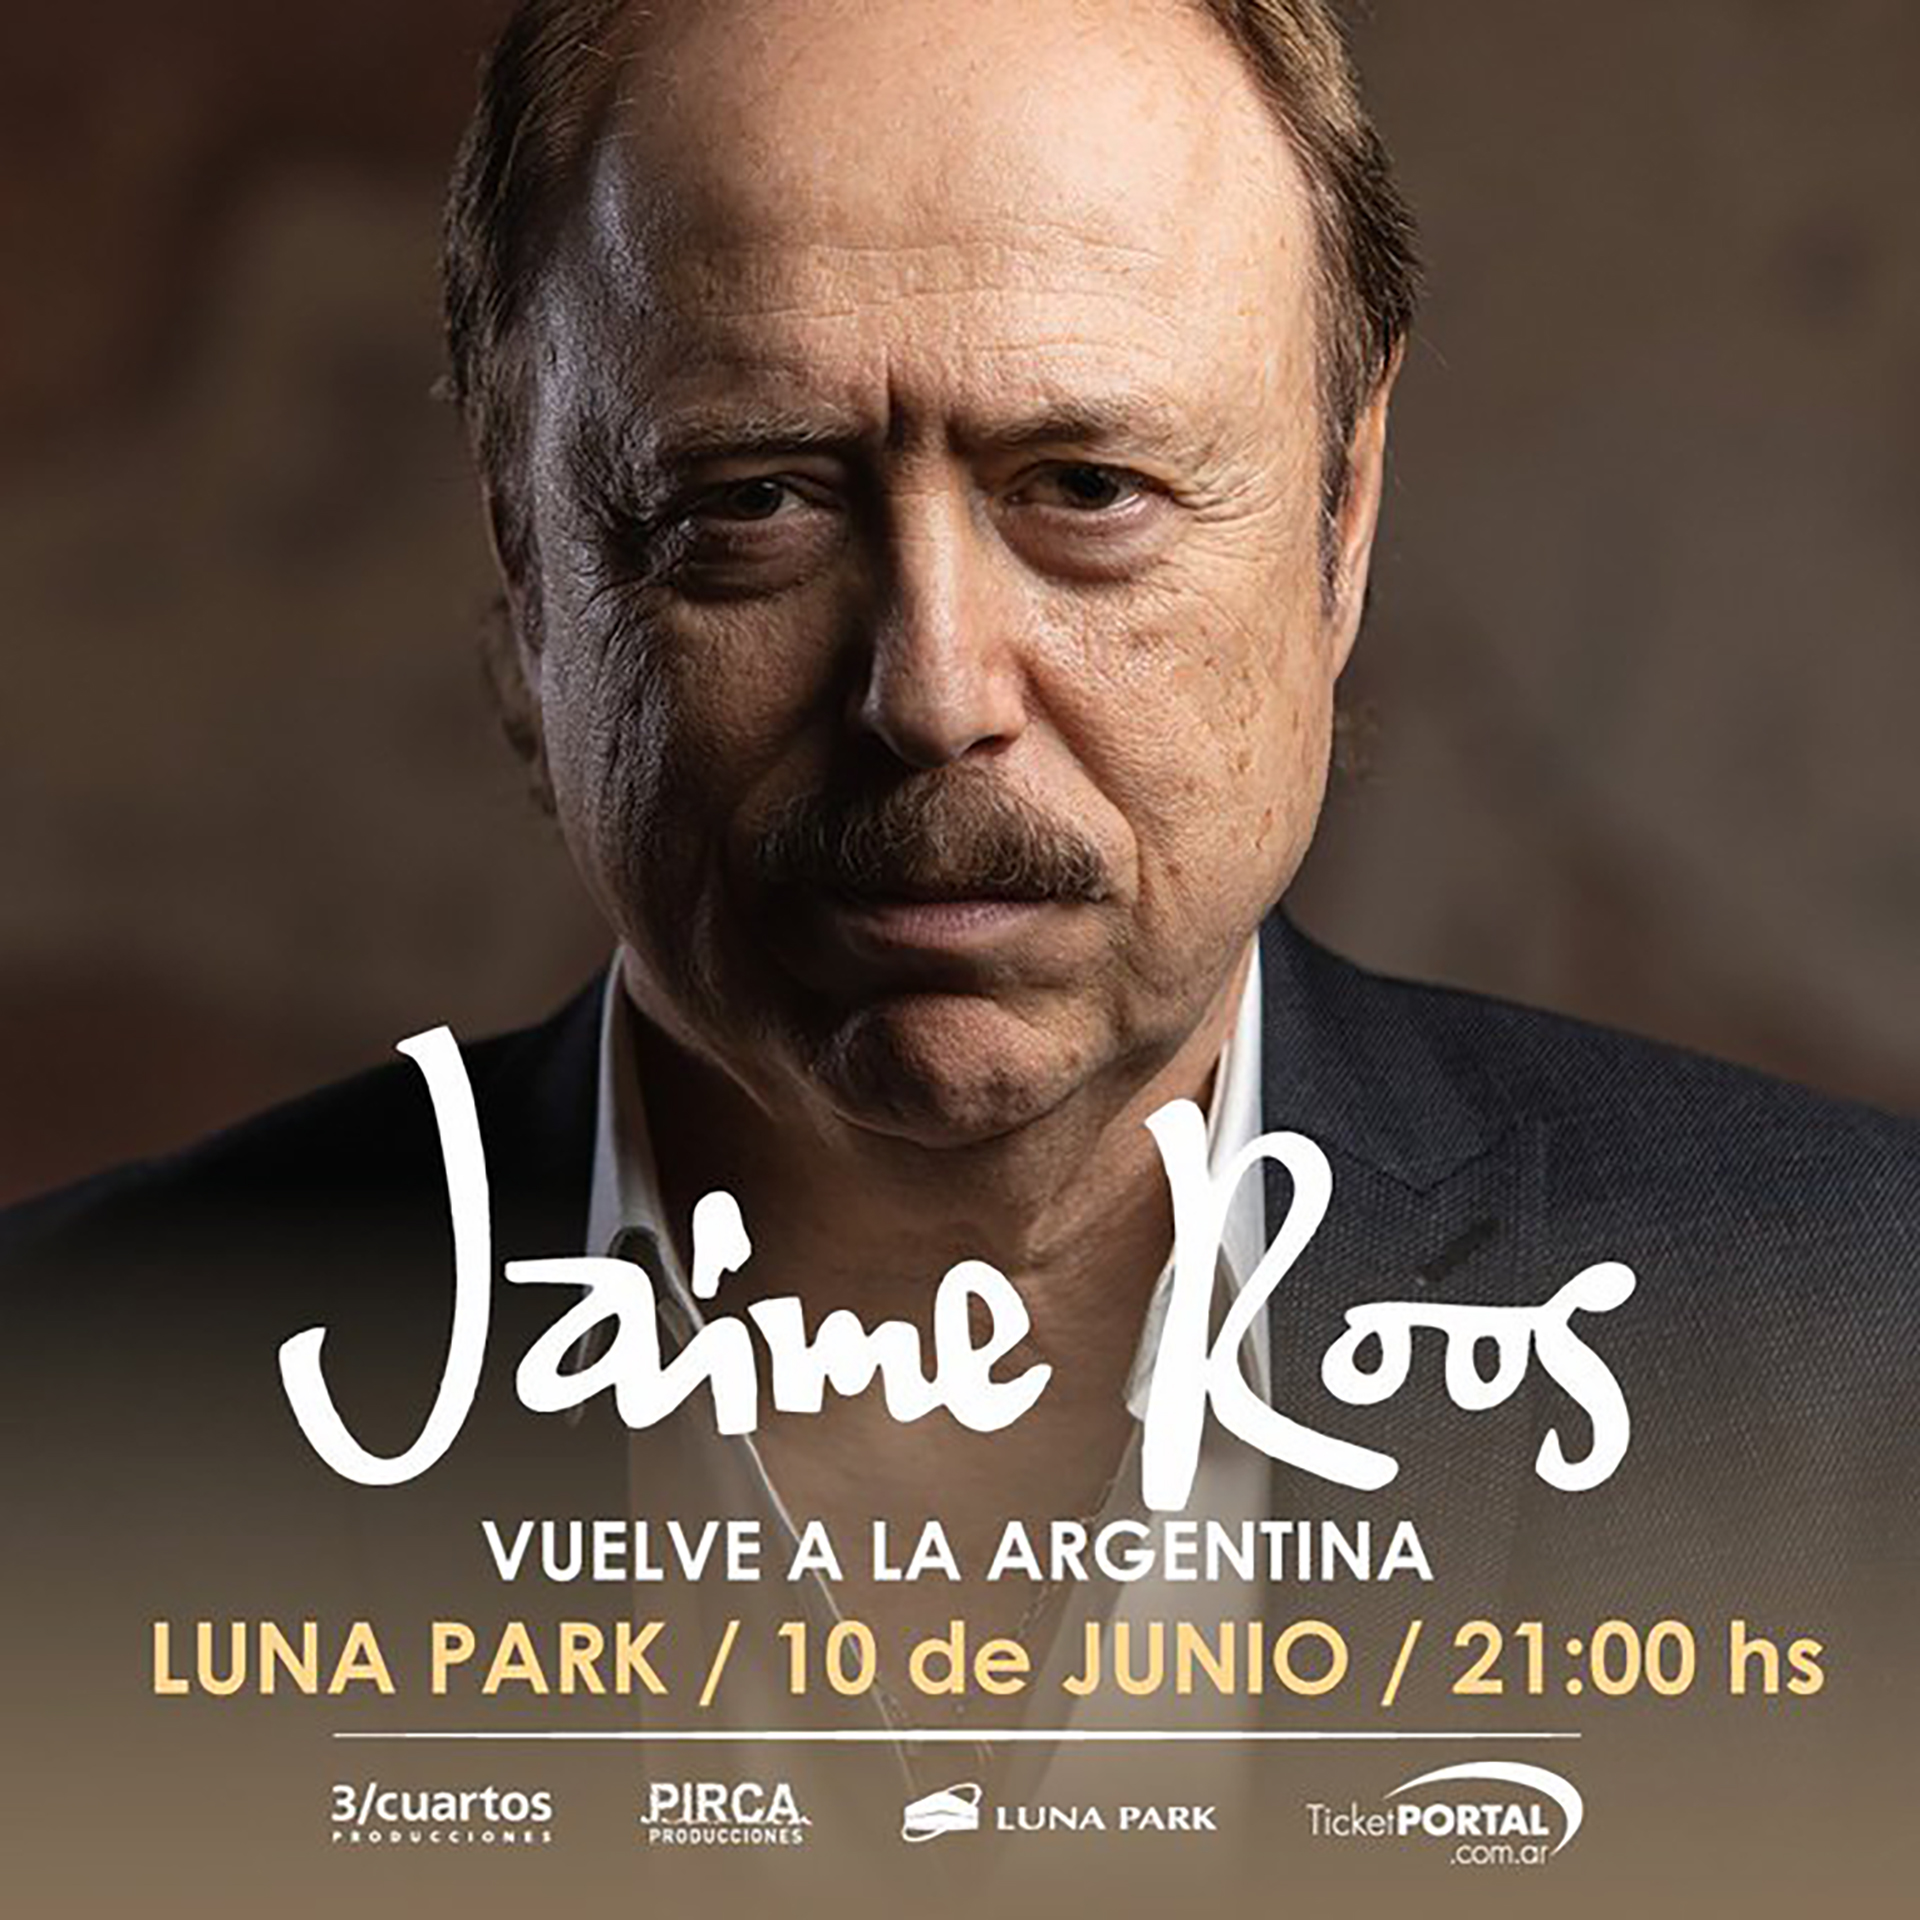 El anuncio del show en la Argentina fue muy esperado por los fanáticos